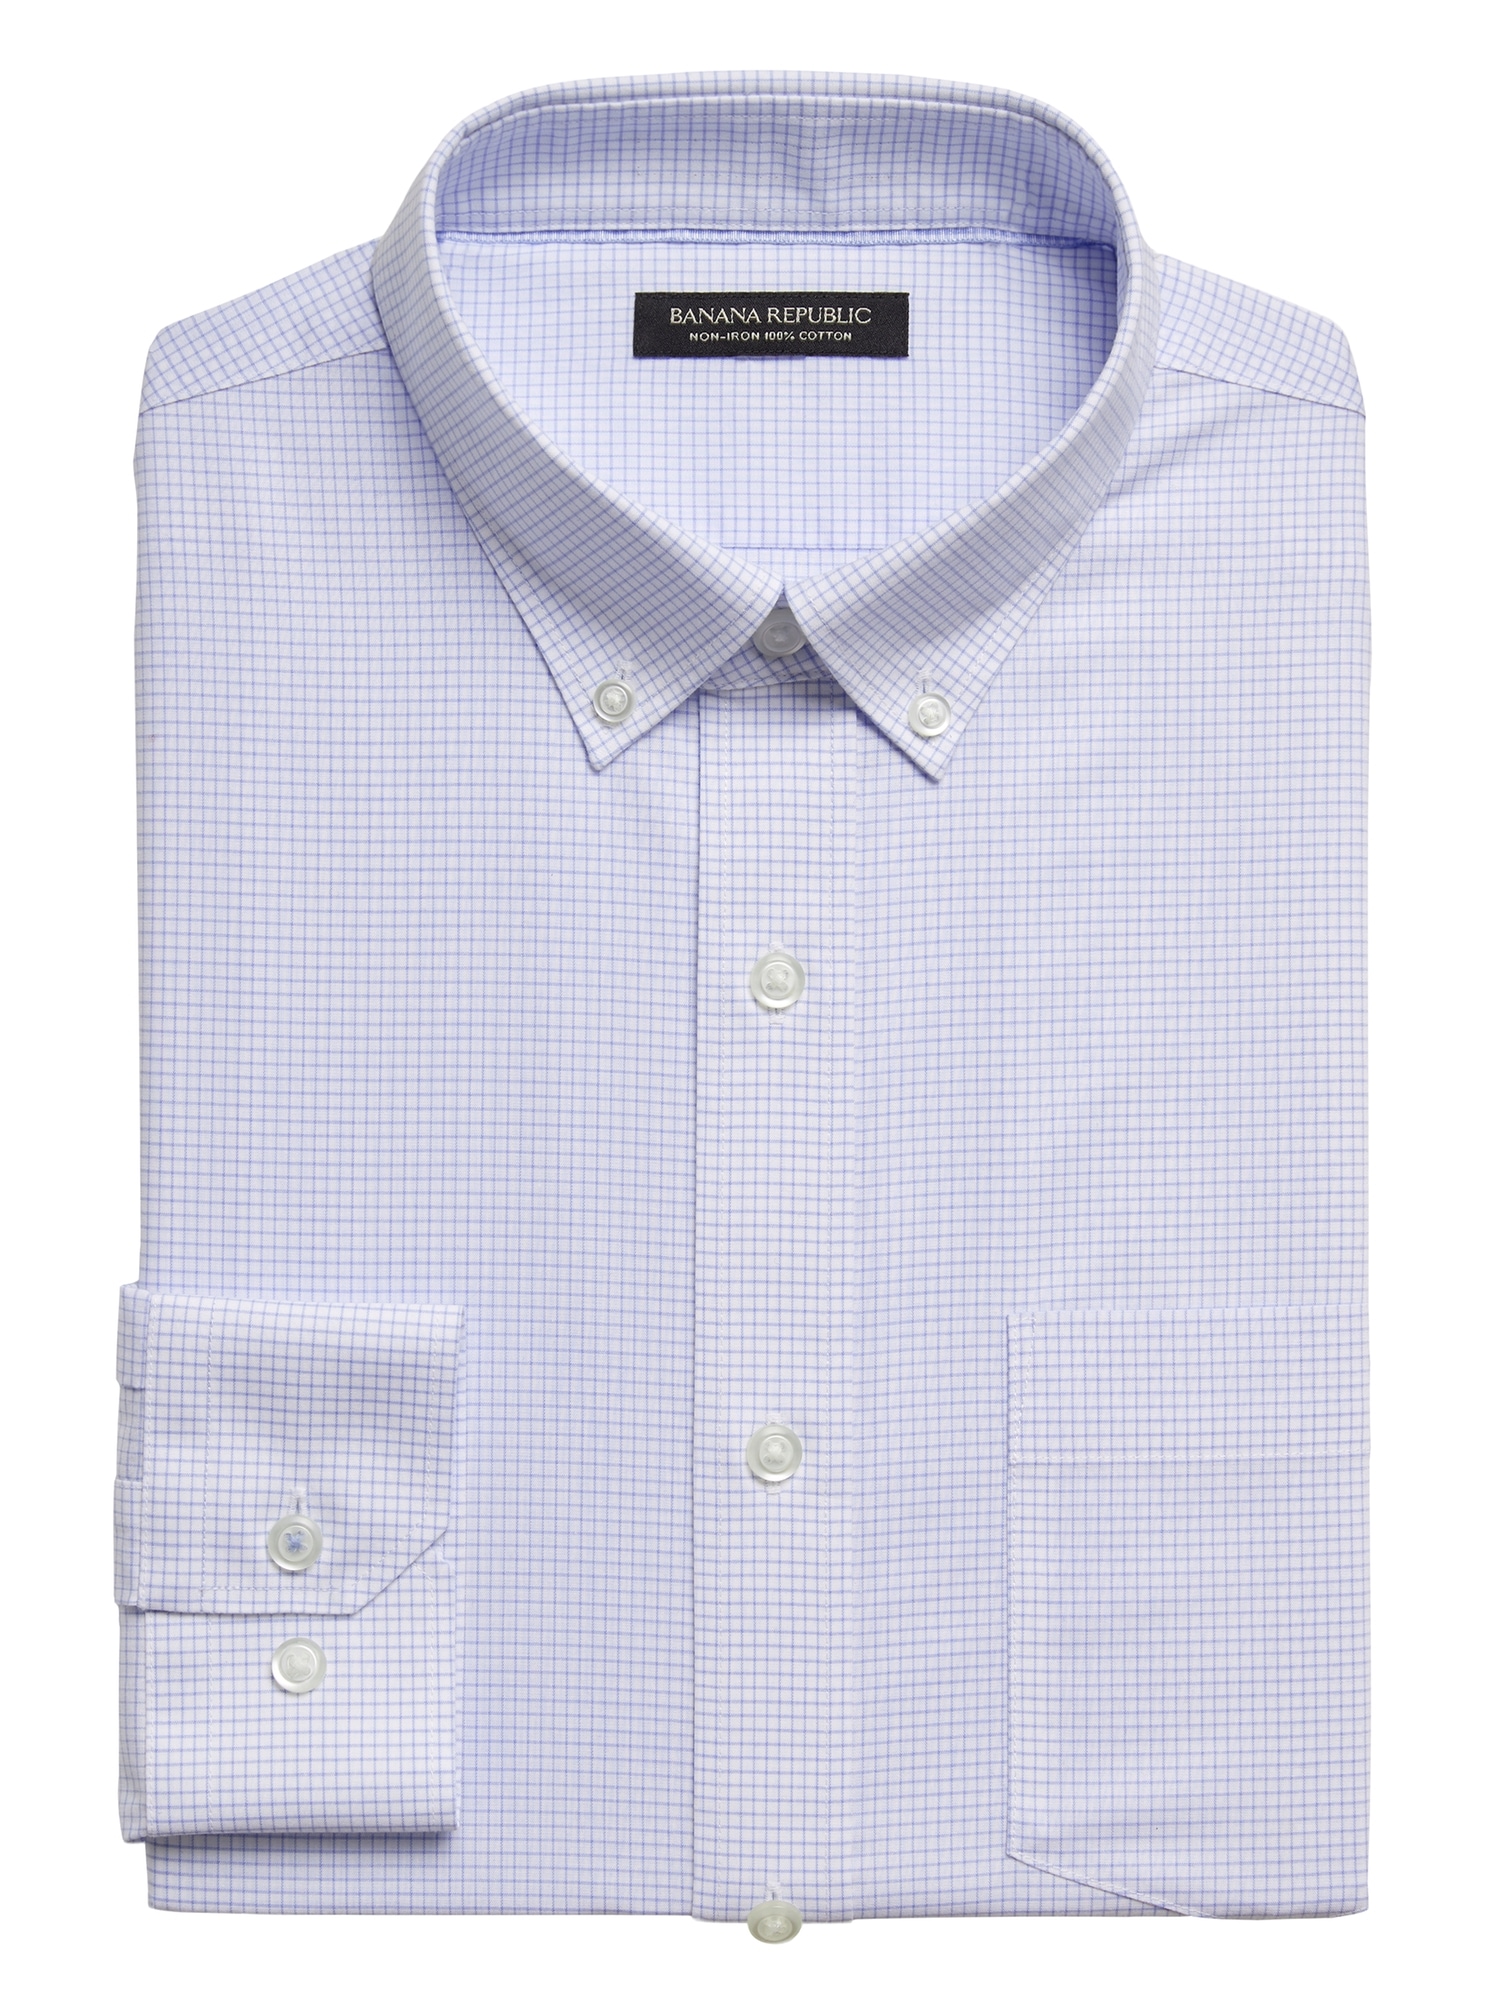 100 cotton button down dress shirts